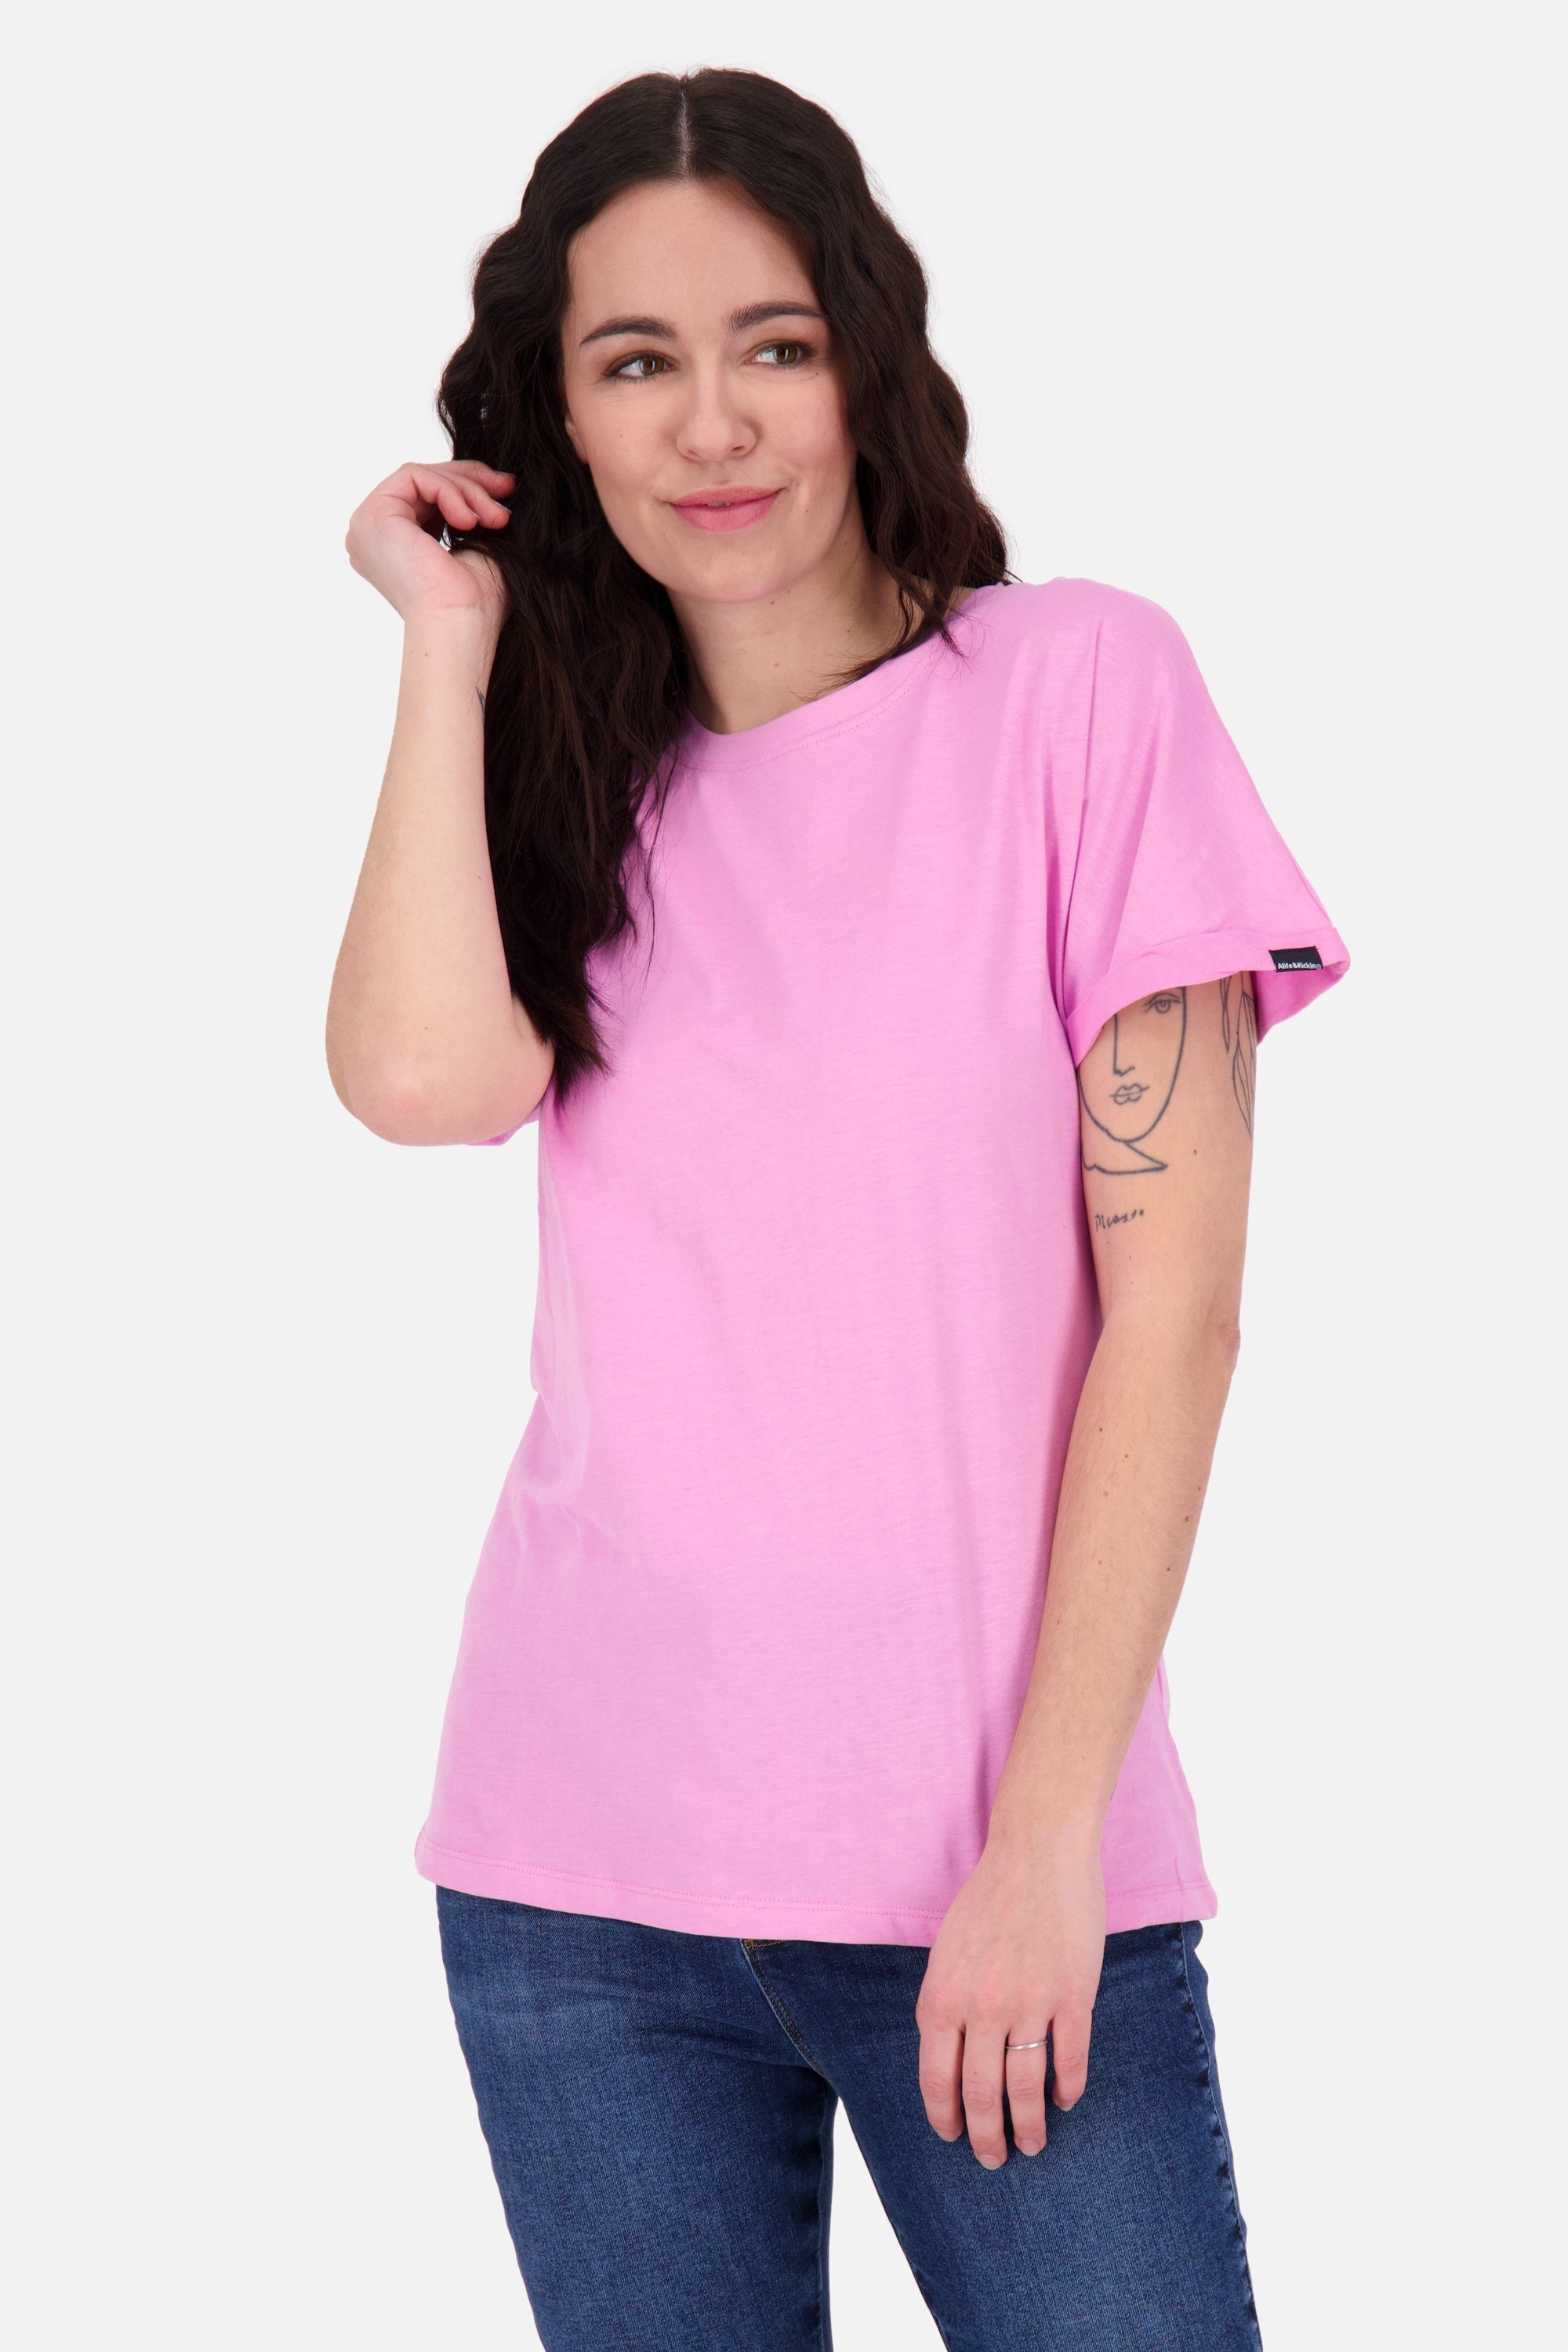 Top-Verkaufsergebnis Alife & Kurzarmshirt, Shirt MalaikaAK A bubblegum melange Kickin Rundhalsshirt Damen Shirt